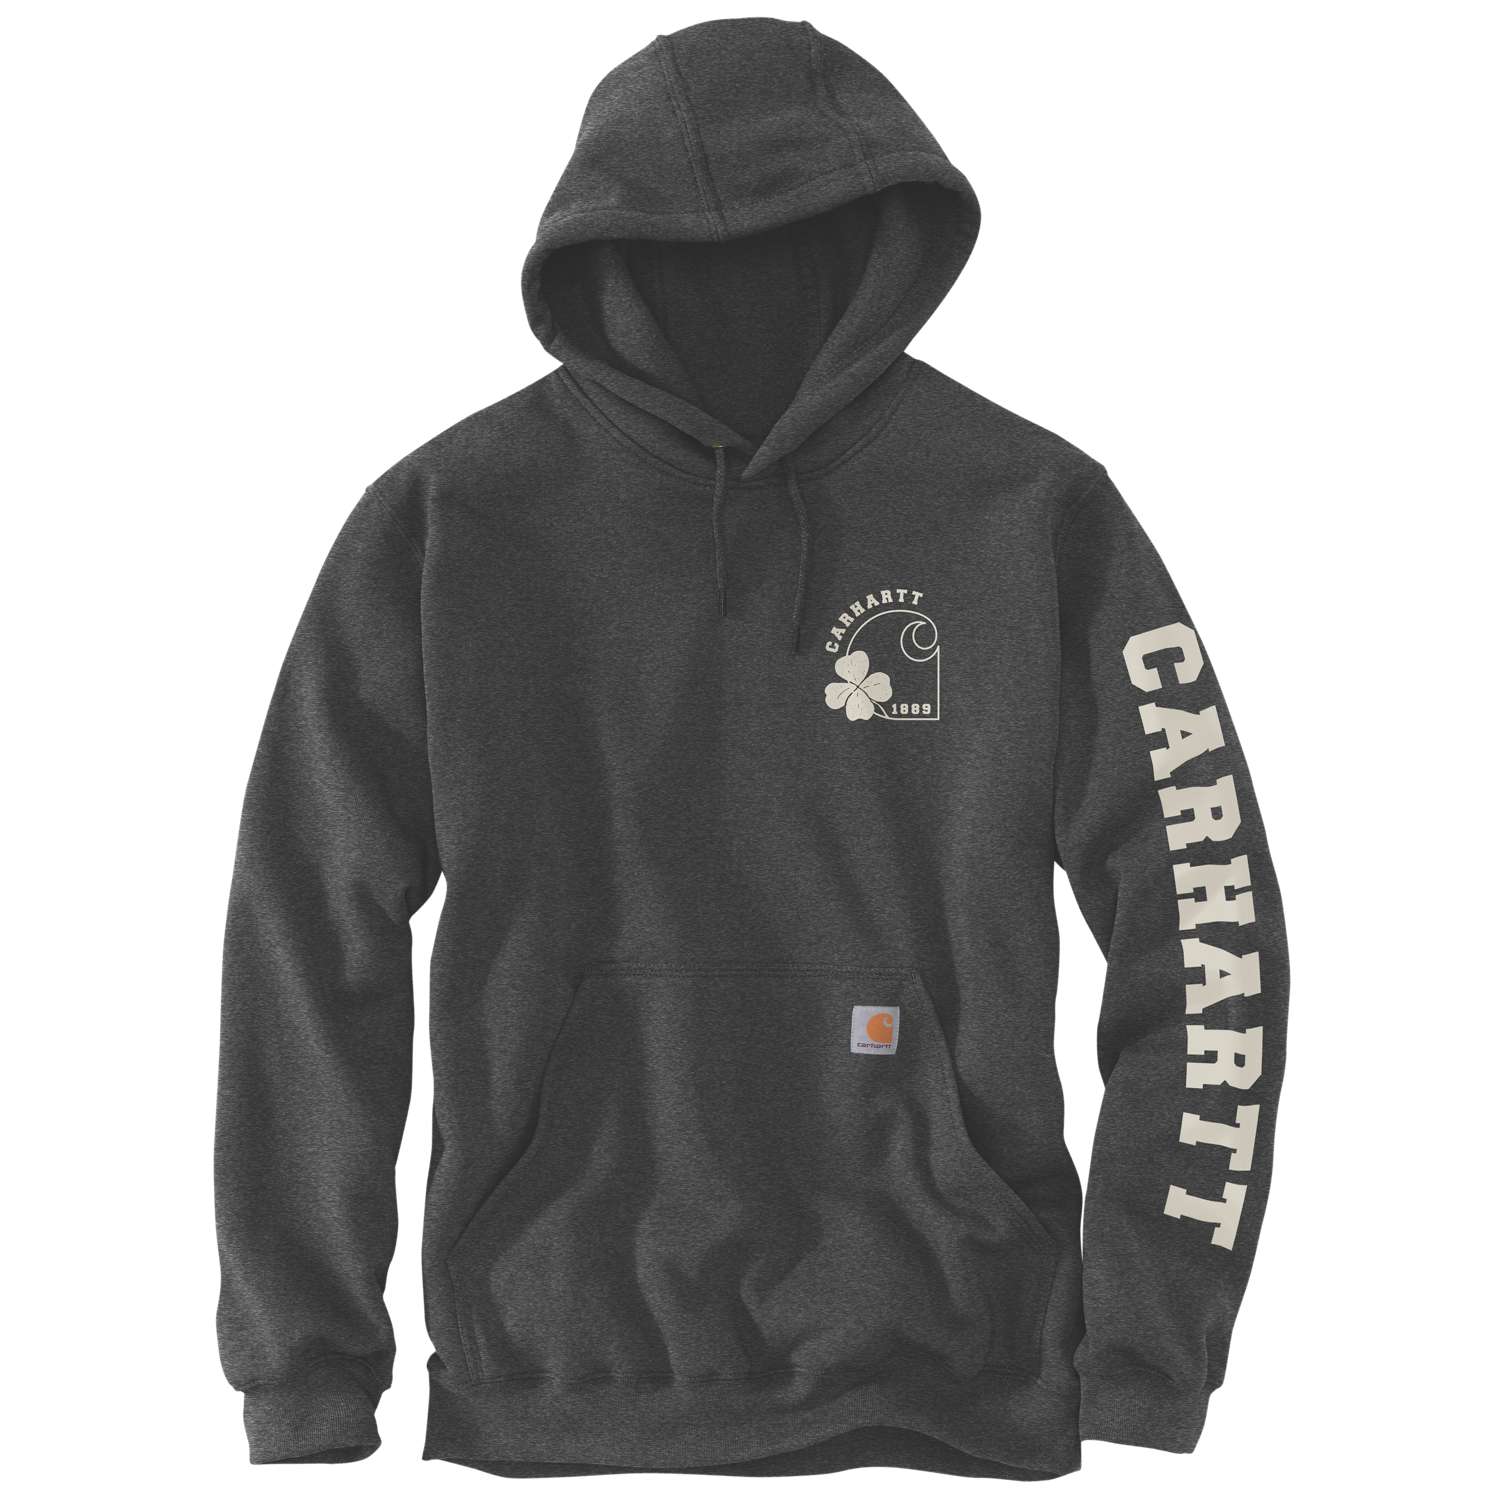 Carhartt cloverleaf graphic sweatshirt